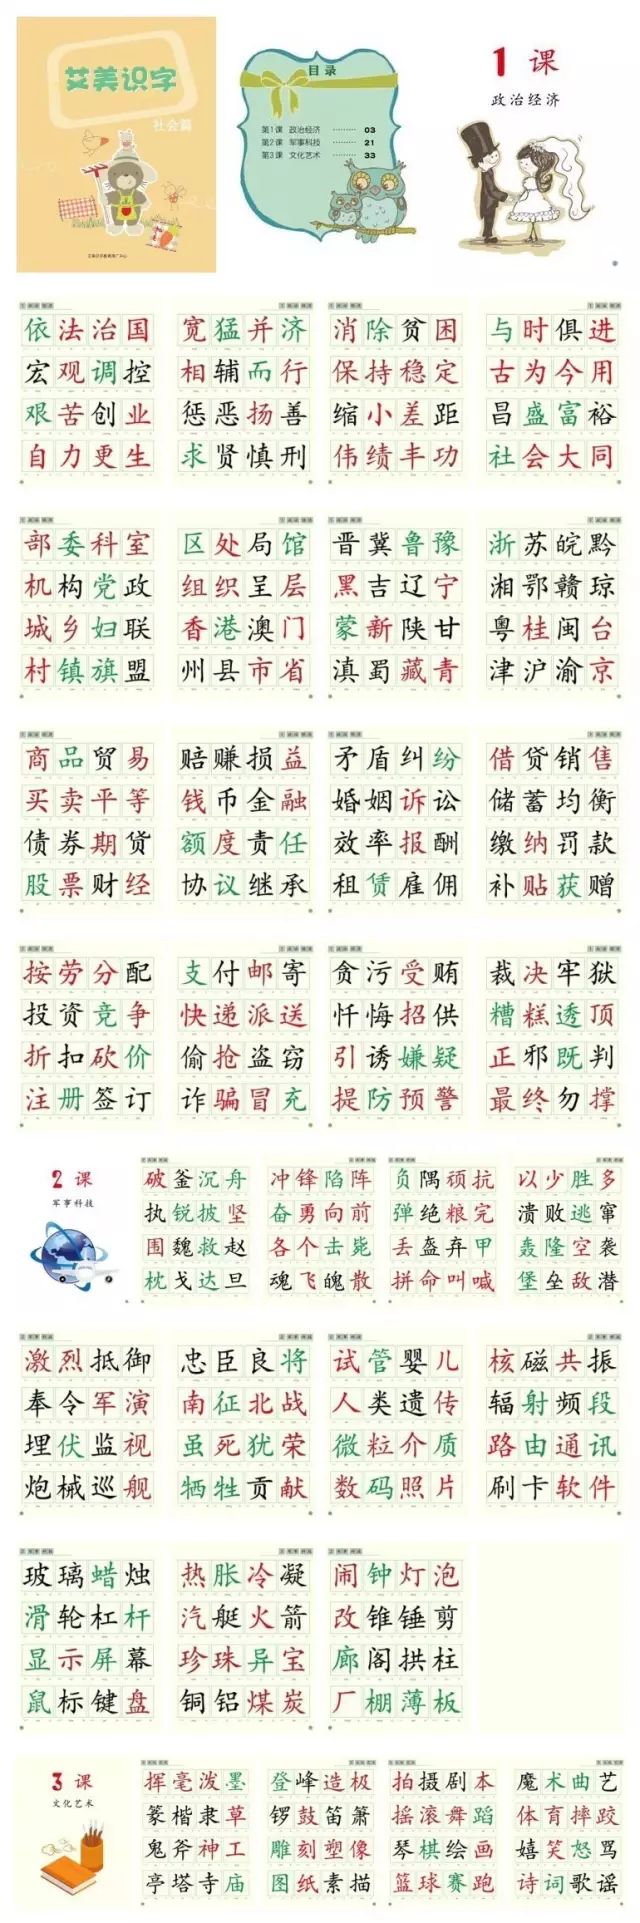 36岁常用两千个不重复汉字